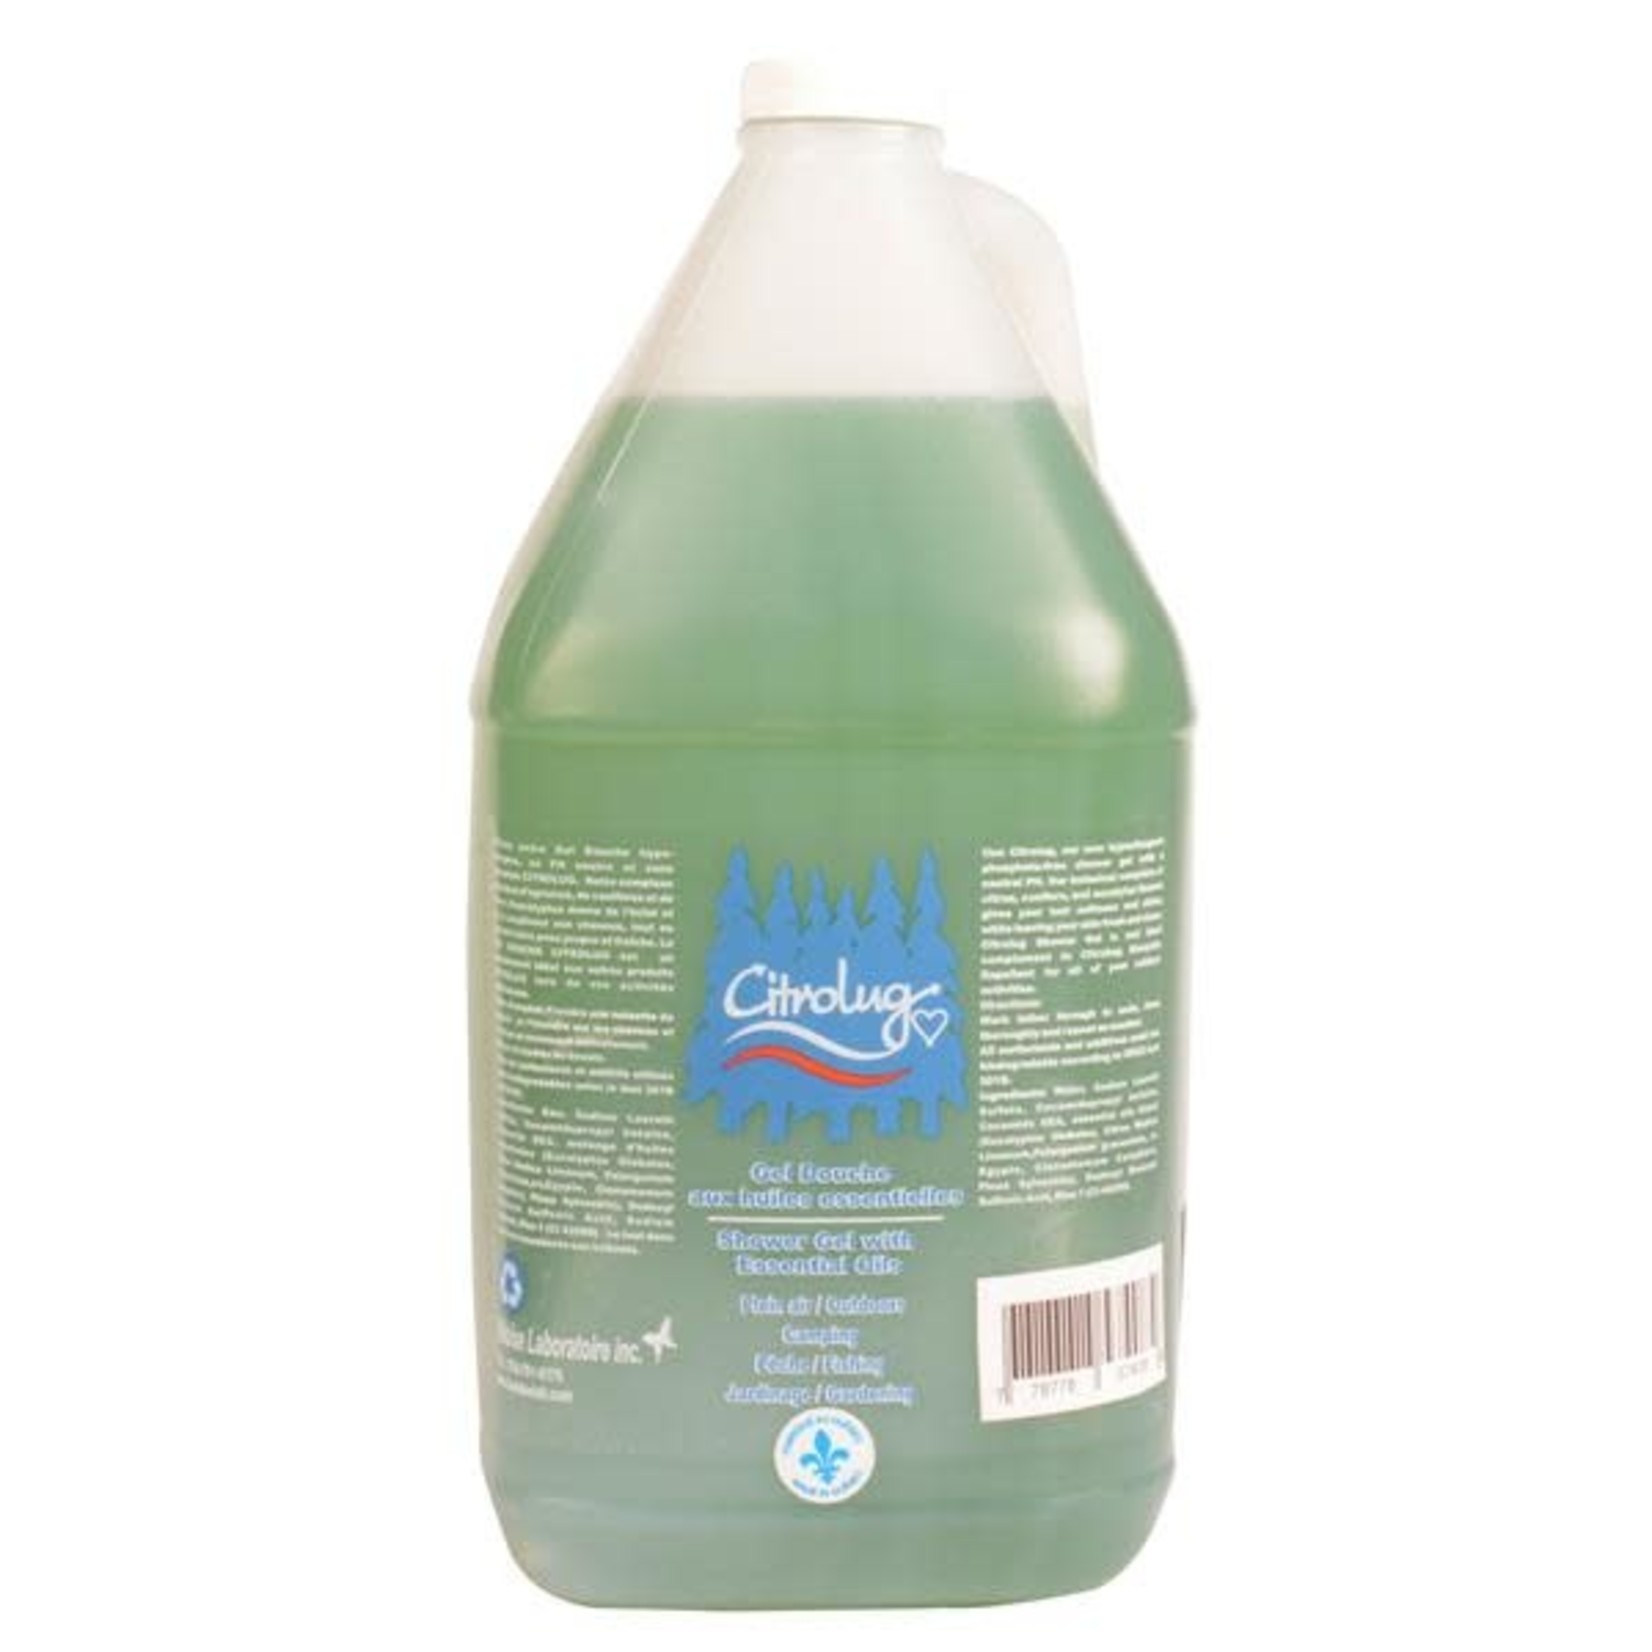 Citrolug shampoo with essential oils